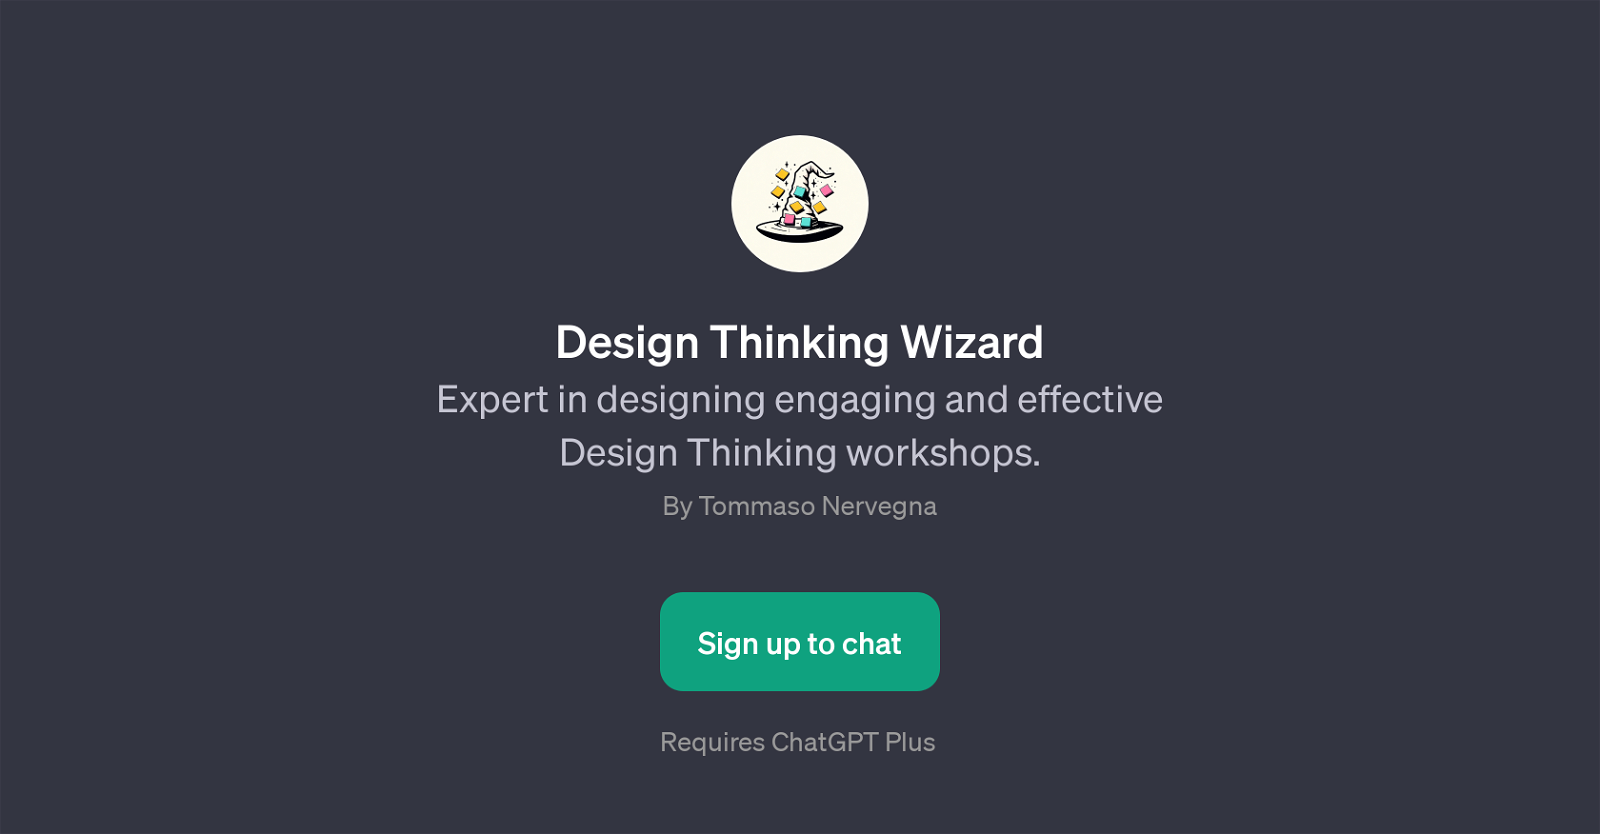 Design Thinking Wizard website